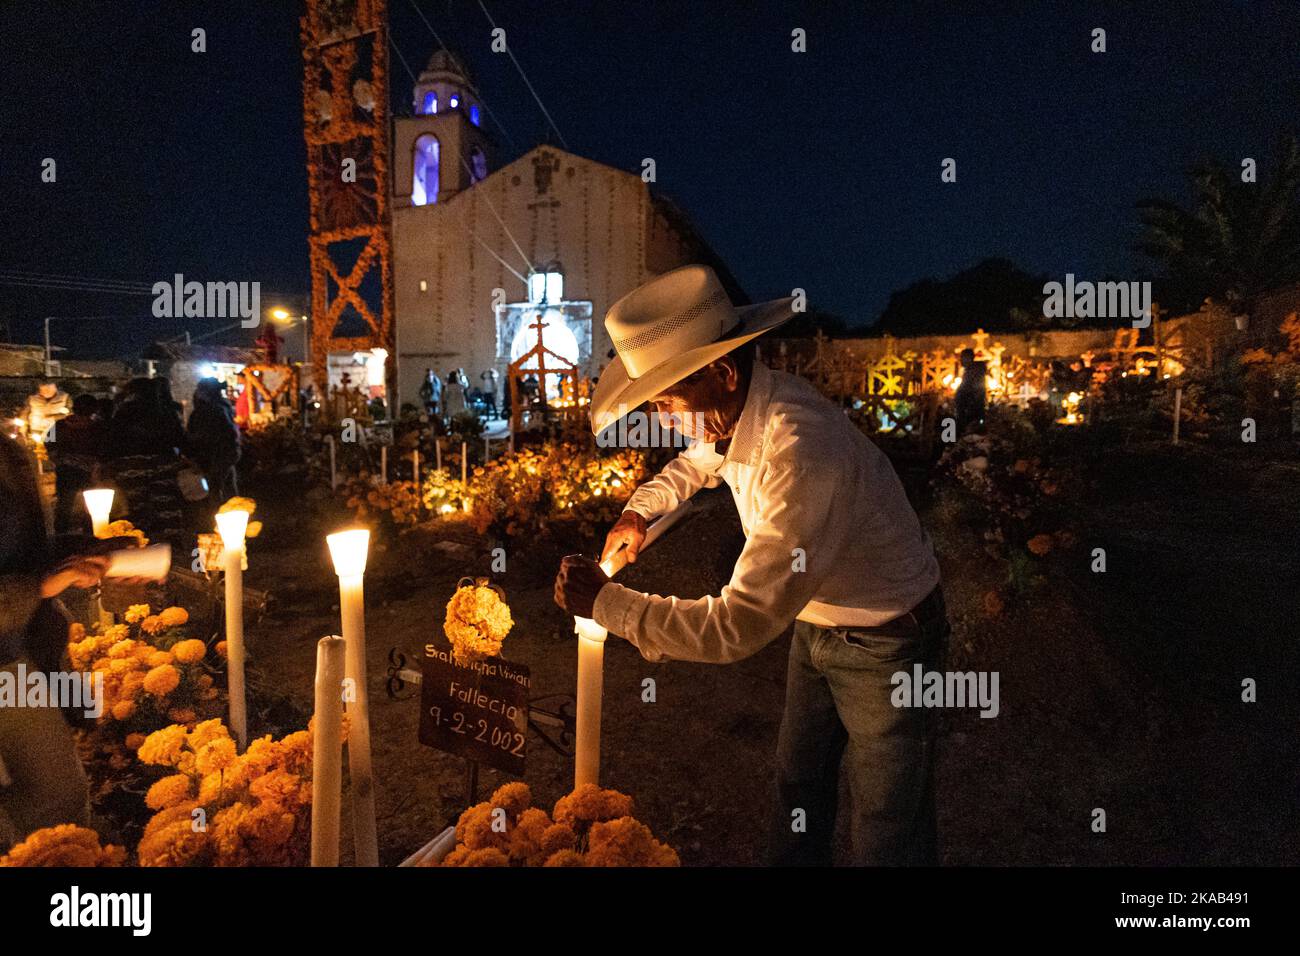 Morelia, Mexiko, 1. November 2022, zündet ein indigener Mann während der Totenfeier auf dem Friedhof von Arocutin, Michoacan, Mexiko, eine Kerze an. Die indigenen Purepecha dieses Dorfes bereiten dieses jährliche Ritual des Gedenkens vor, indem sie Altäre mit Ringelblumen, Kerzen und dem Lieblingsessen oder Getränk der Verstorbenen bauen. Die Mahnwache findet in der Nacht des 1.. November statt und hat sich zu einer wichtigen Touristenattraktion im zentralmexikanischen Bundesstaat Michoacan entwickelt. Brian Overcast/Alamy Live News Stockfoto